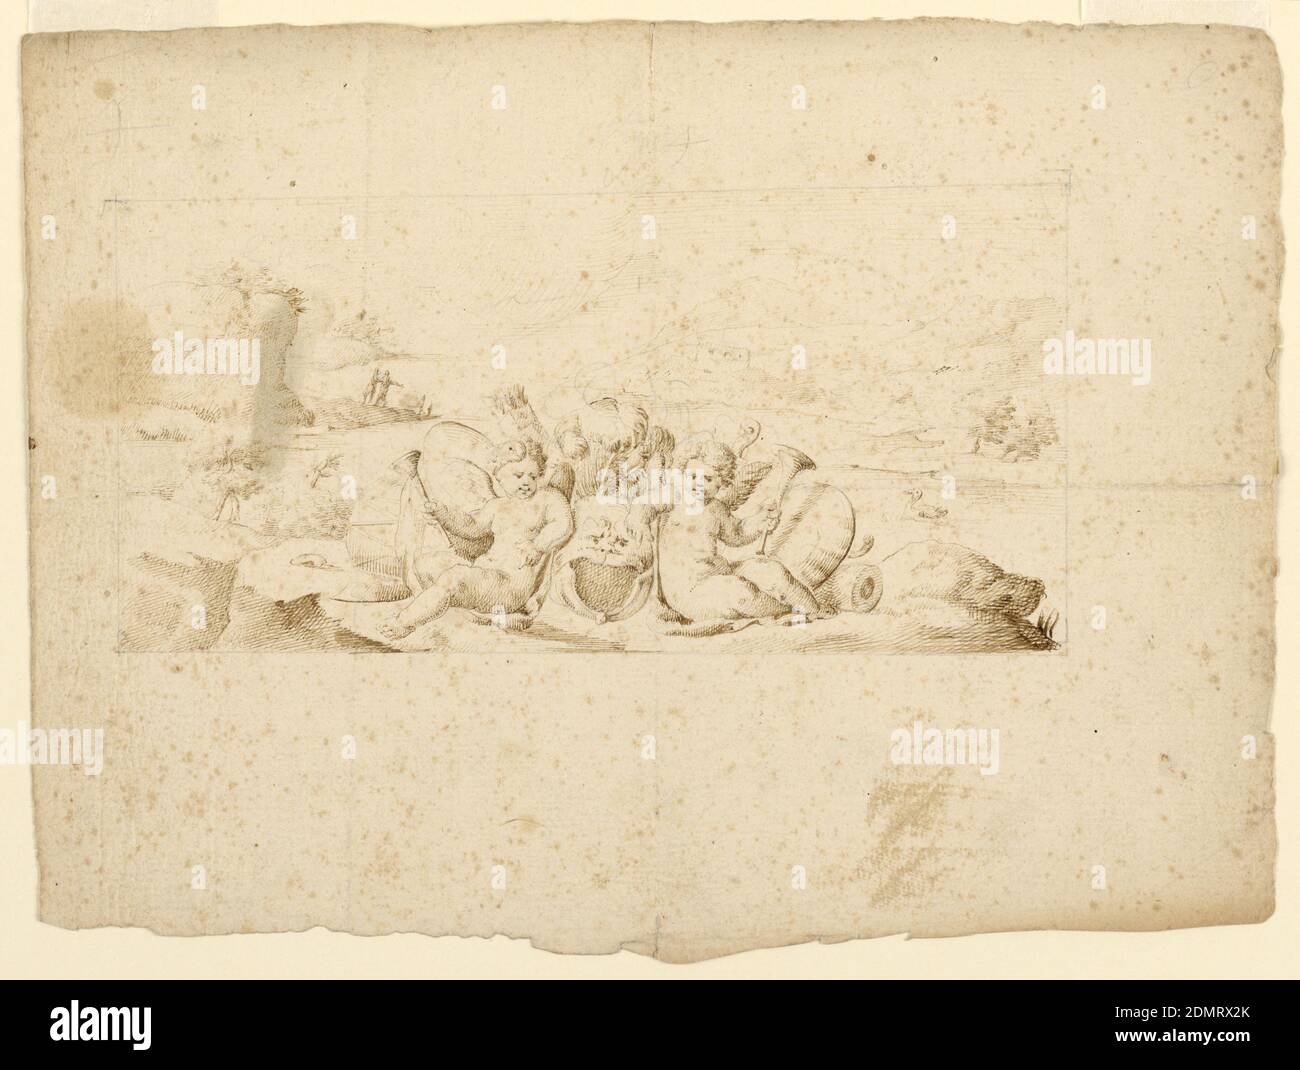 Design für ein Buch Illustration, Stift und Tinte auf Papier, zwei Putti, die jeweils eine Trompete halten, sitzen mit einer gefiederten Maske dazwischen. Hinter einem Köcher und einer Landschaft., Italien, 1625–1650, Figuren, Zeichnung Stockfoto